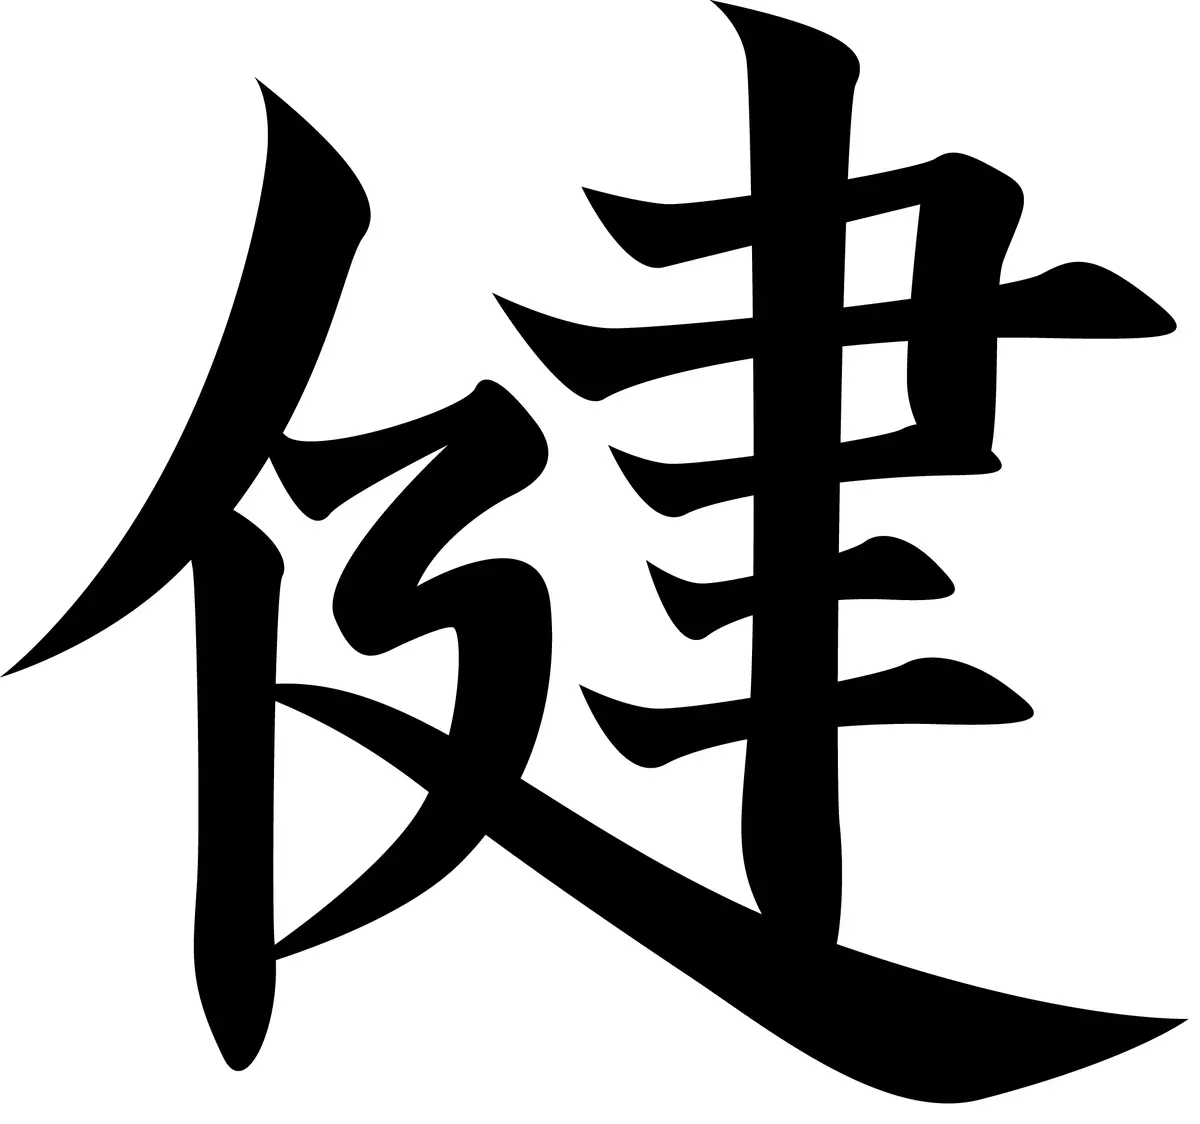 Hieroglyphs (40 foto): karakter kebahagiaan Cina, muga-muga, katresnan lan kasugihan. Kepiye cara narik kawigaten kesehatan lan dhuwit ing kulawarga? 8261_25